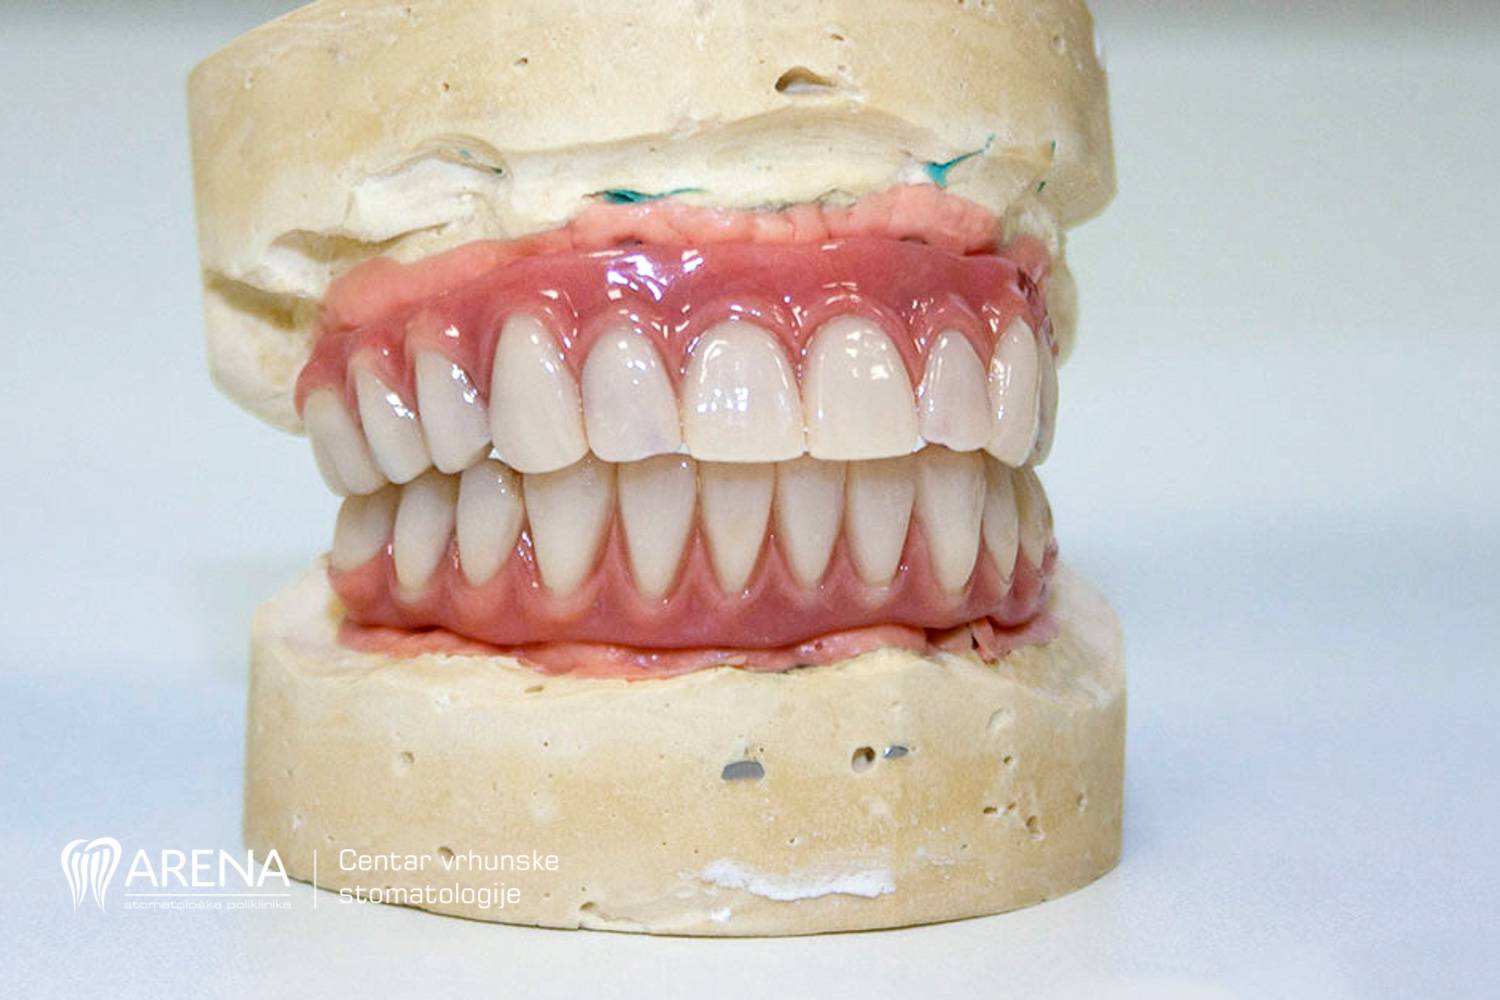 Muči vas nedostatak zubi? Potražite trajno rješenje